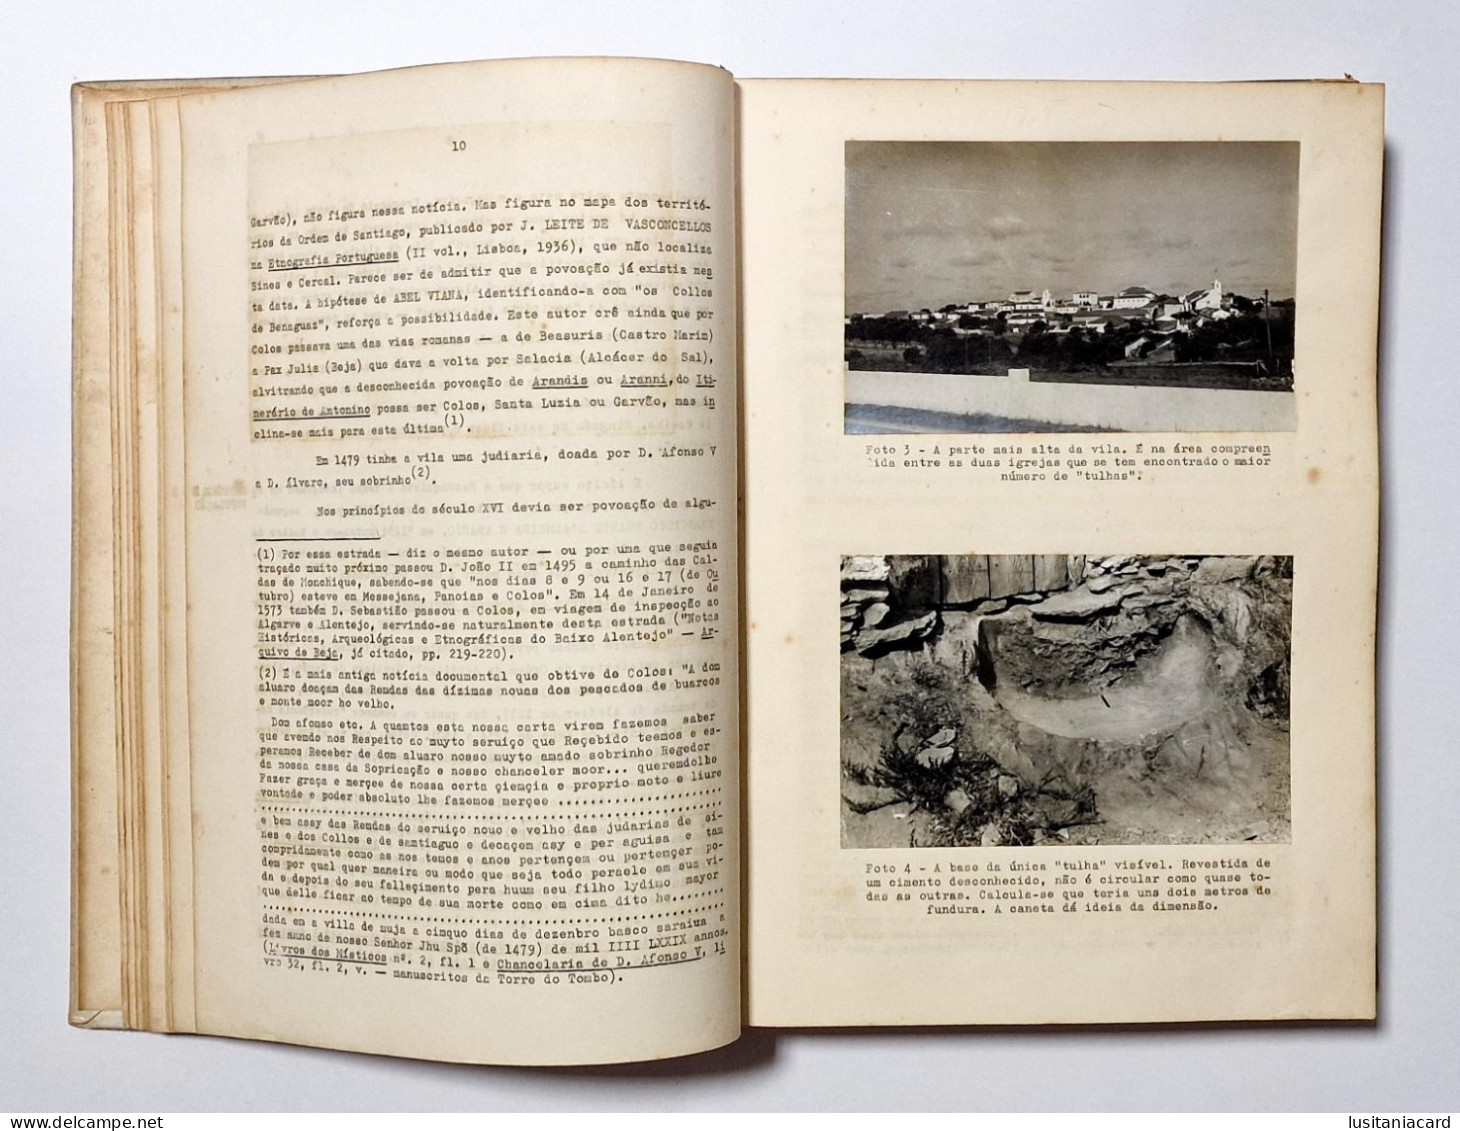 ALENTEJO-MONOGRAFIAS - Colos ( Alentejo) - Elementos Monograficos(Aut:Antonio Machado Guerreiro -1968) - Livres Anciens